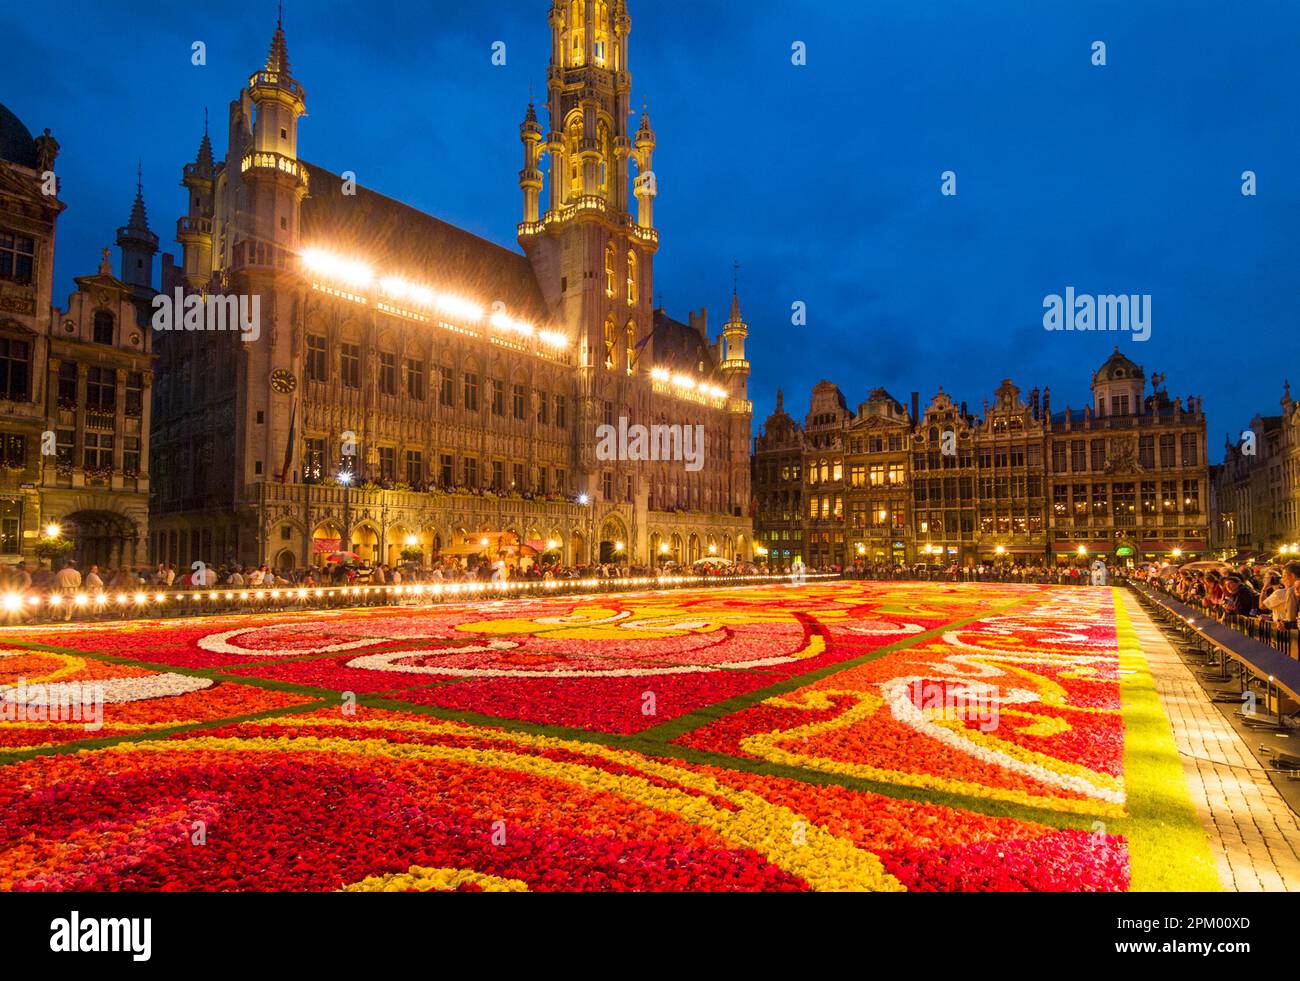 Bruxelles Grand-place Bruxelles tapis de fleurs la nuit illuminé dans la Grand-place Bruxelles Belgique UE Europe Banque D'Images